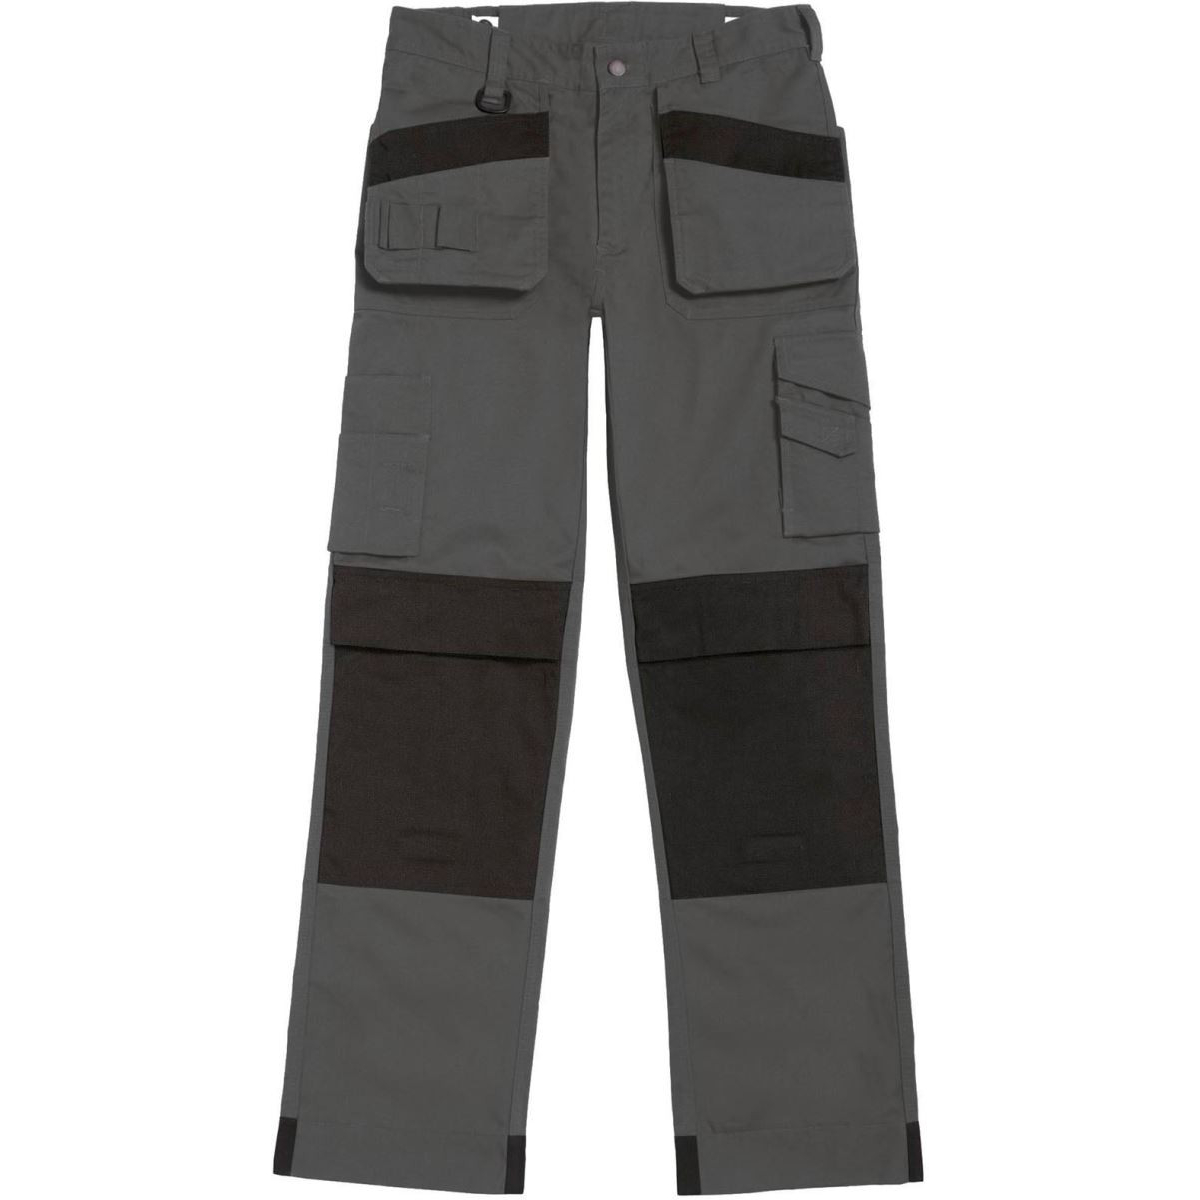 Pánské pracovní kalhoty B&C Performance Pro s multi-kapsami - šedé-černé, 52